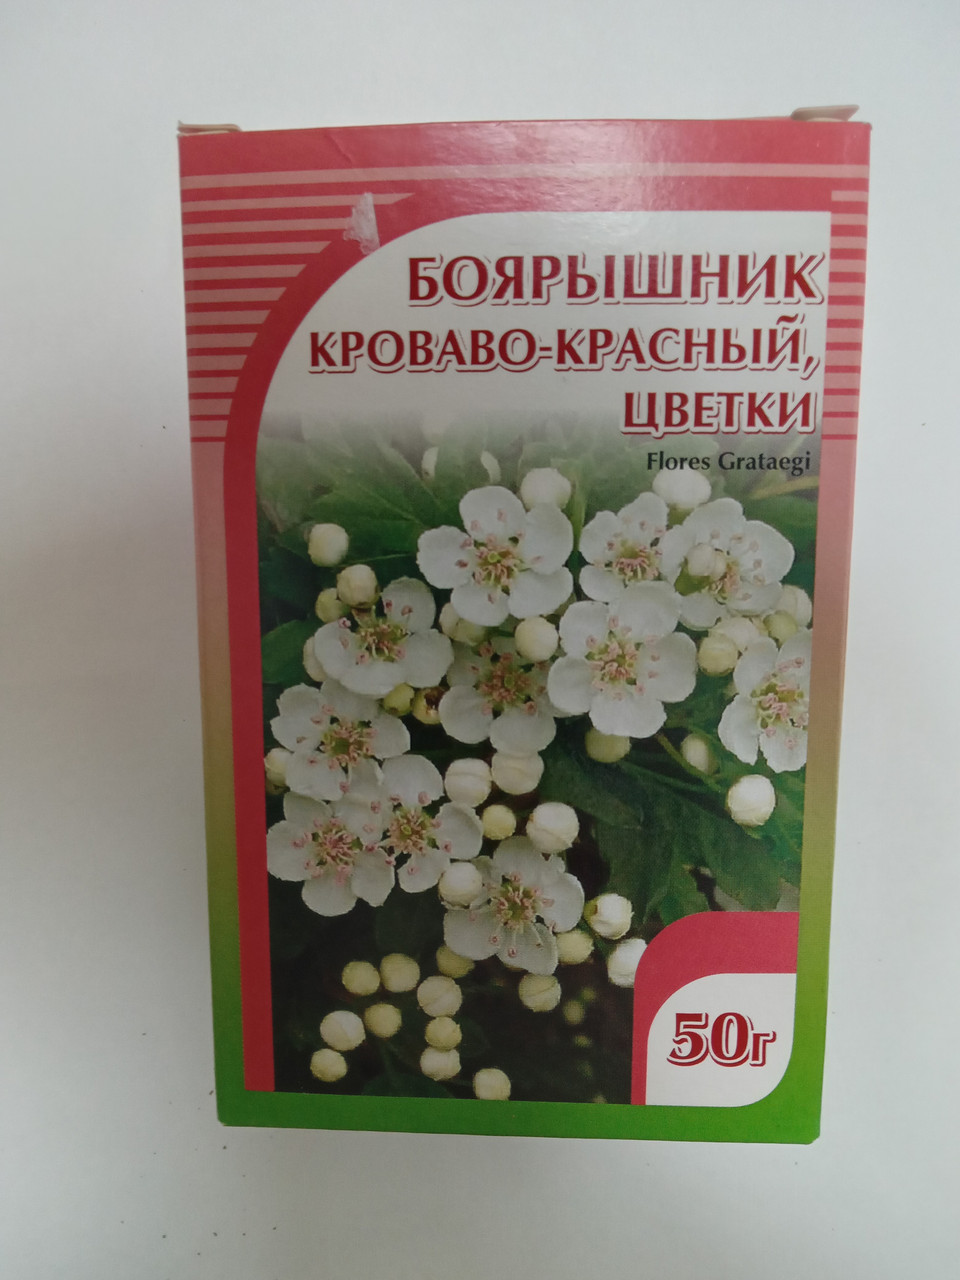 Боярышник кроваво-красный цветки, Хорст, 50 гр